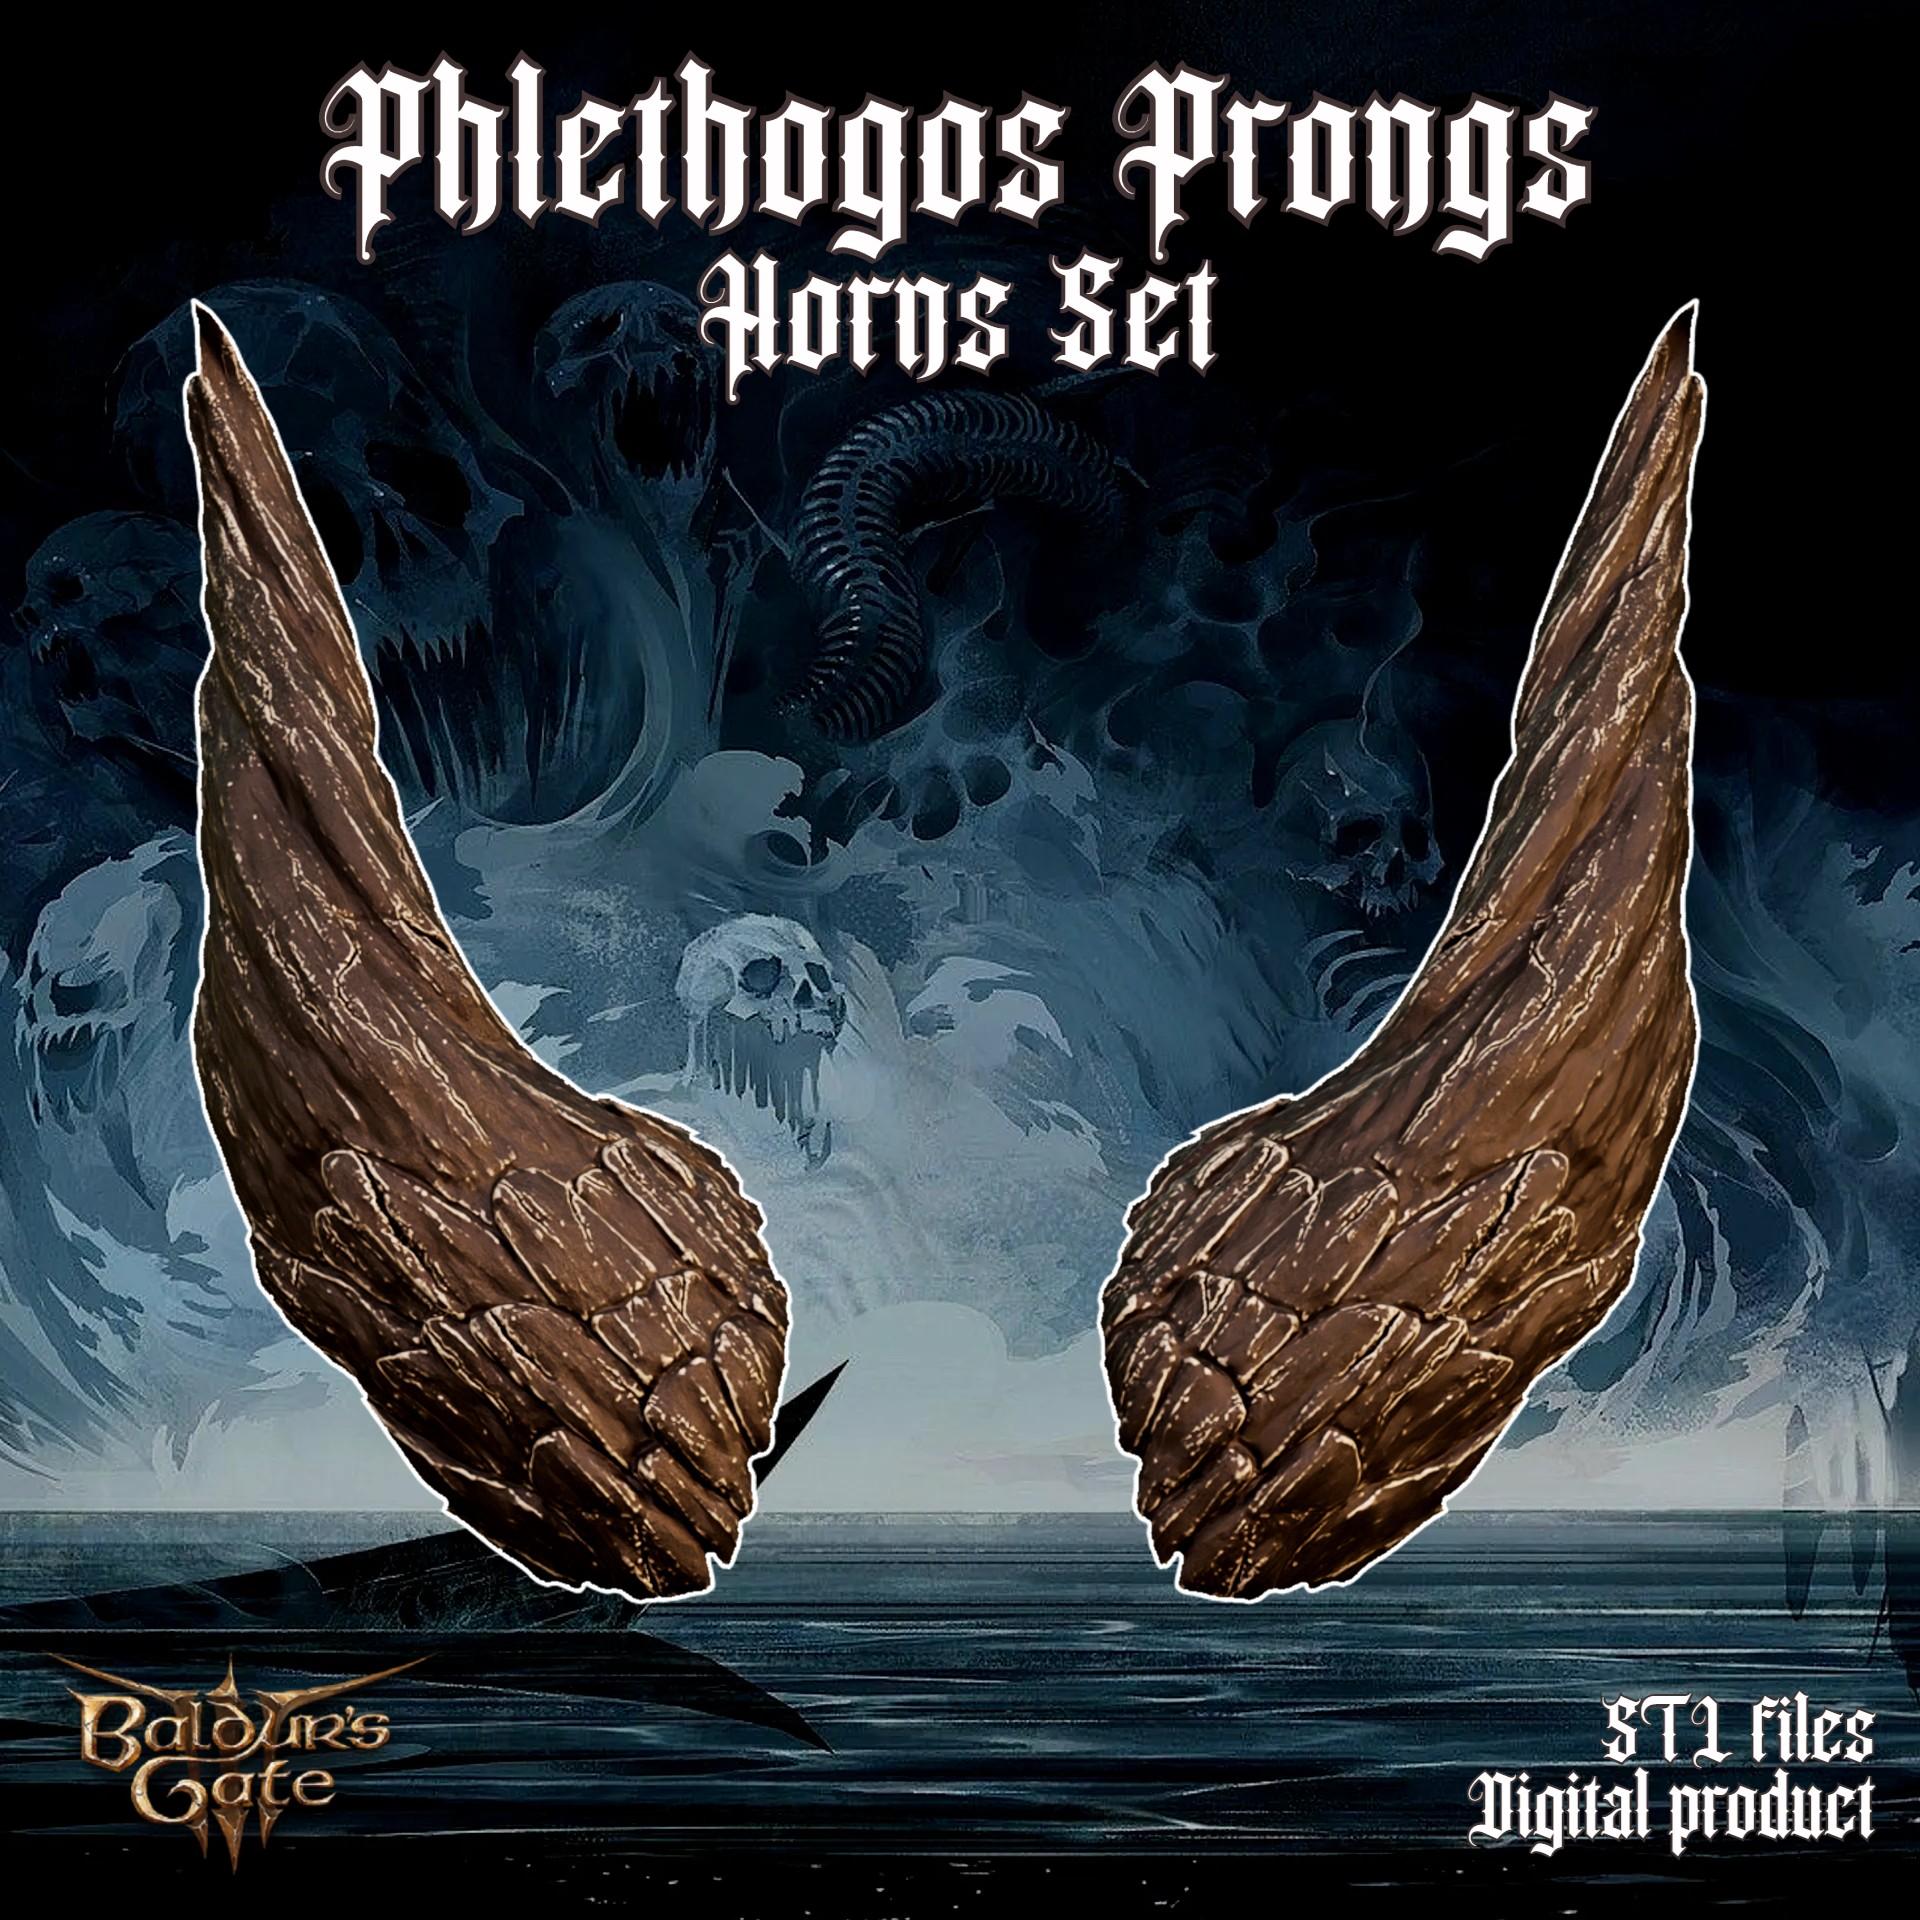 Fantasy Phlethogos Prongs Baldurs Gate 3 3d model